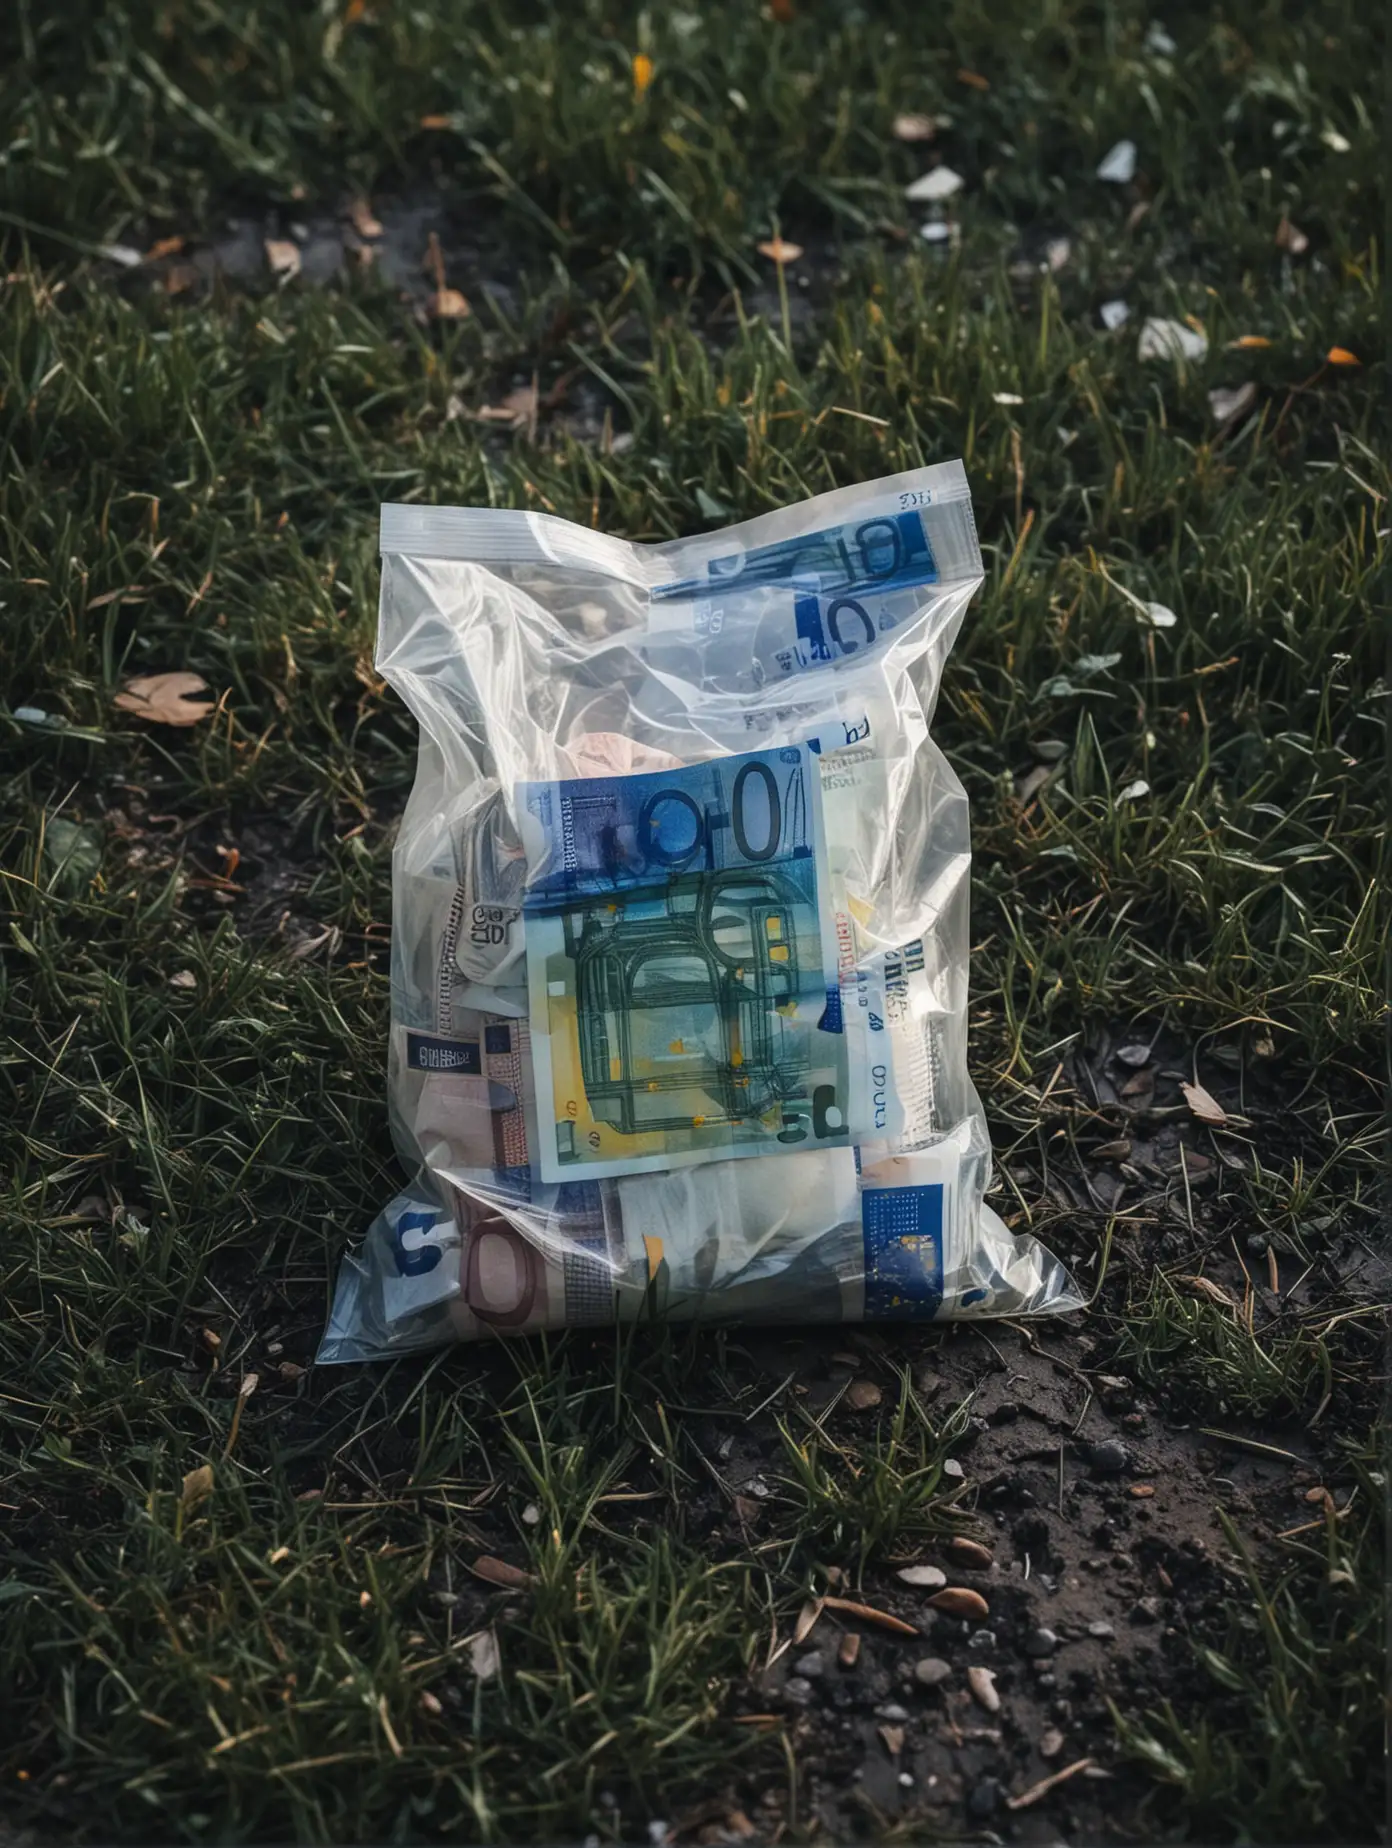 ambiance glauque de nuit,
un petit sac plastique un peu transparent rempli de billets d'euros pausé sur le sol avec un peu d'herbe